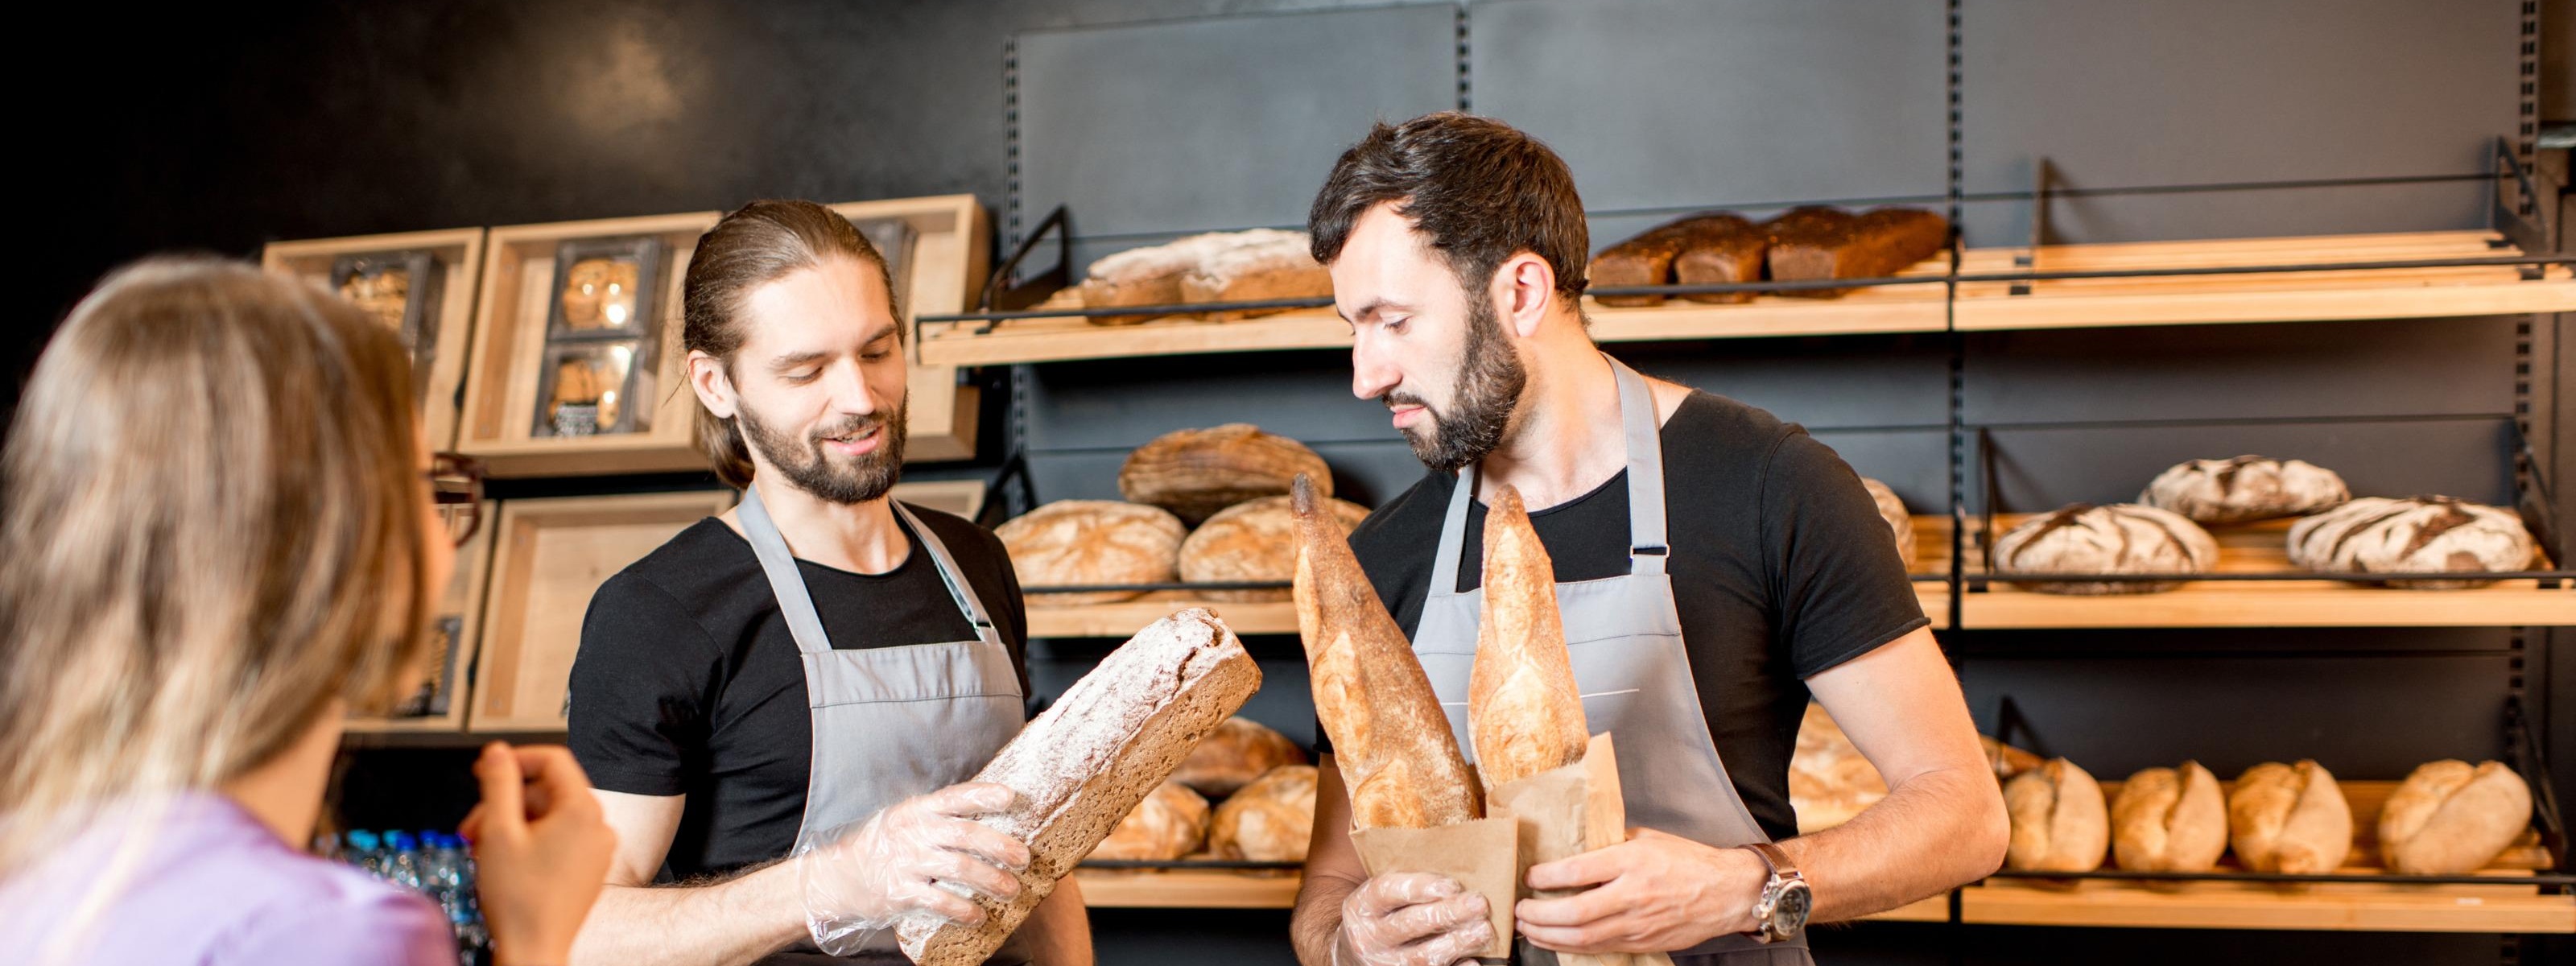 Zwei Personen mit grauen Schürzen auf Brote blickend hinter Theke stehend, eine Person im Vordergrund, im Hintergrund Regale mit Brotlaiben